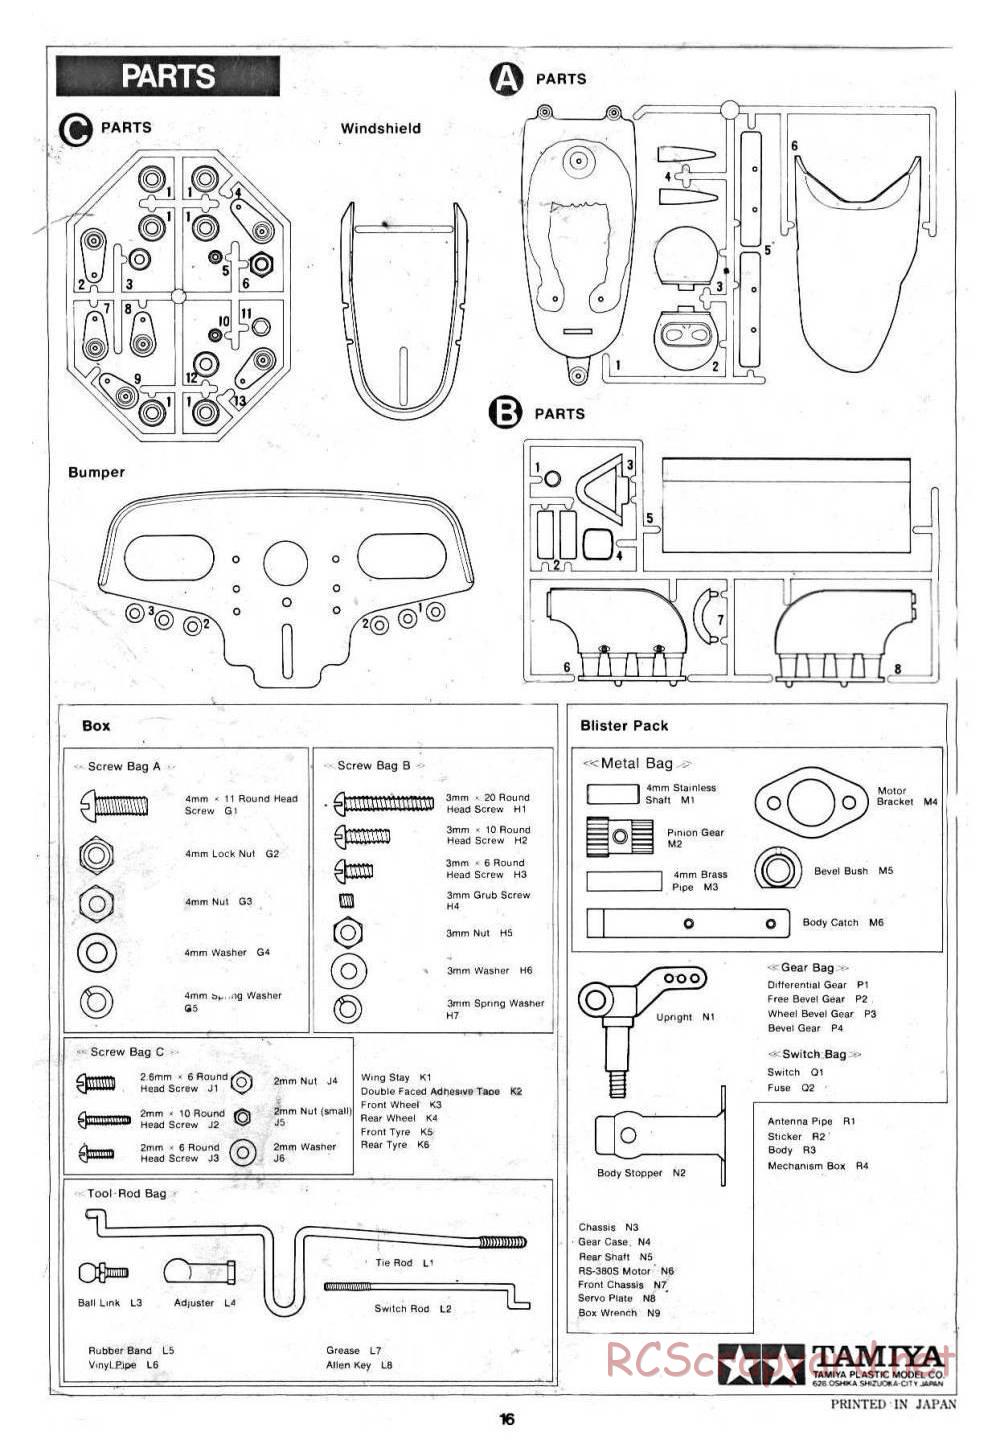 Tamiya - March 782 BMW (F2) - 58013 - Manual - Page 16